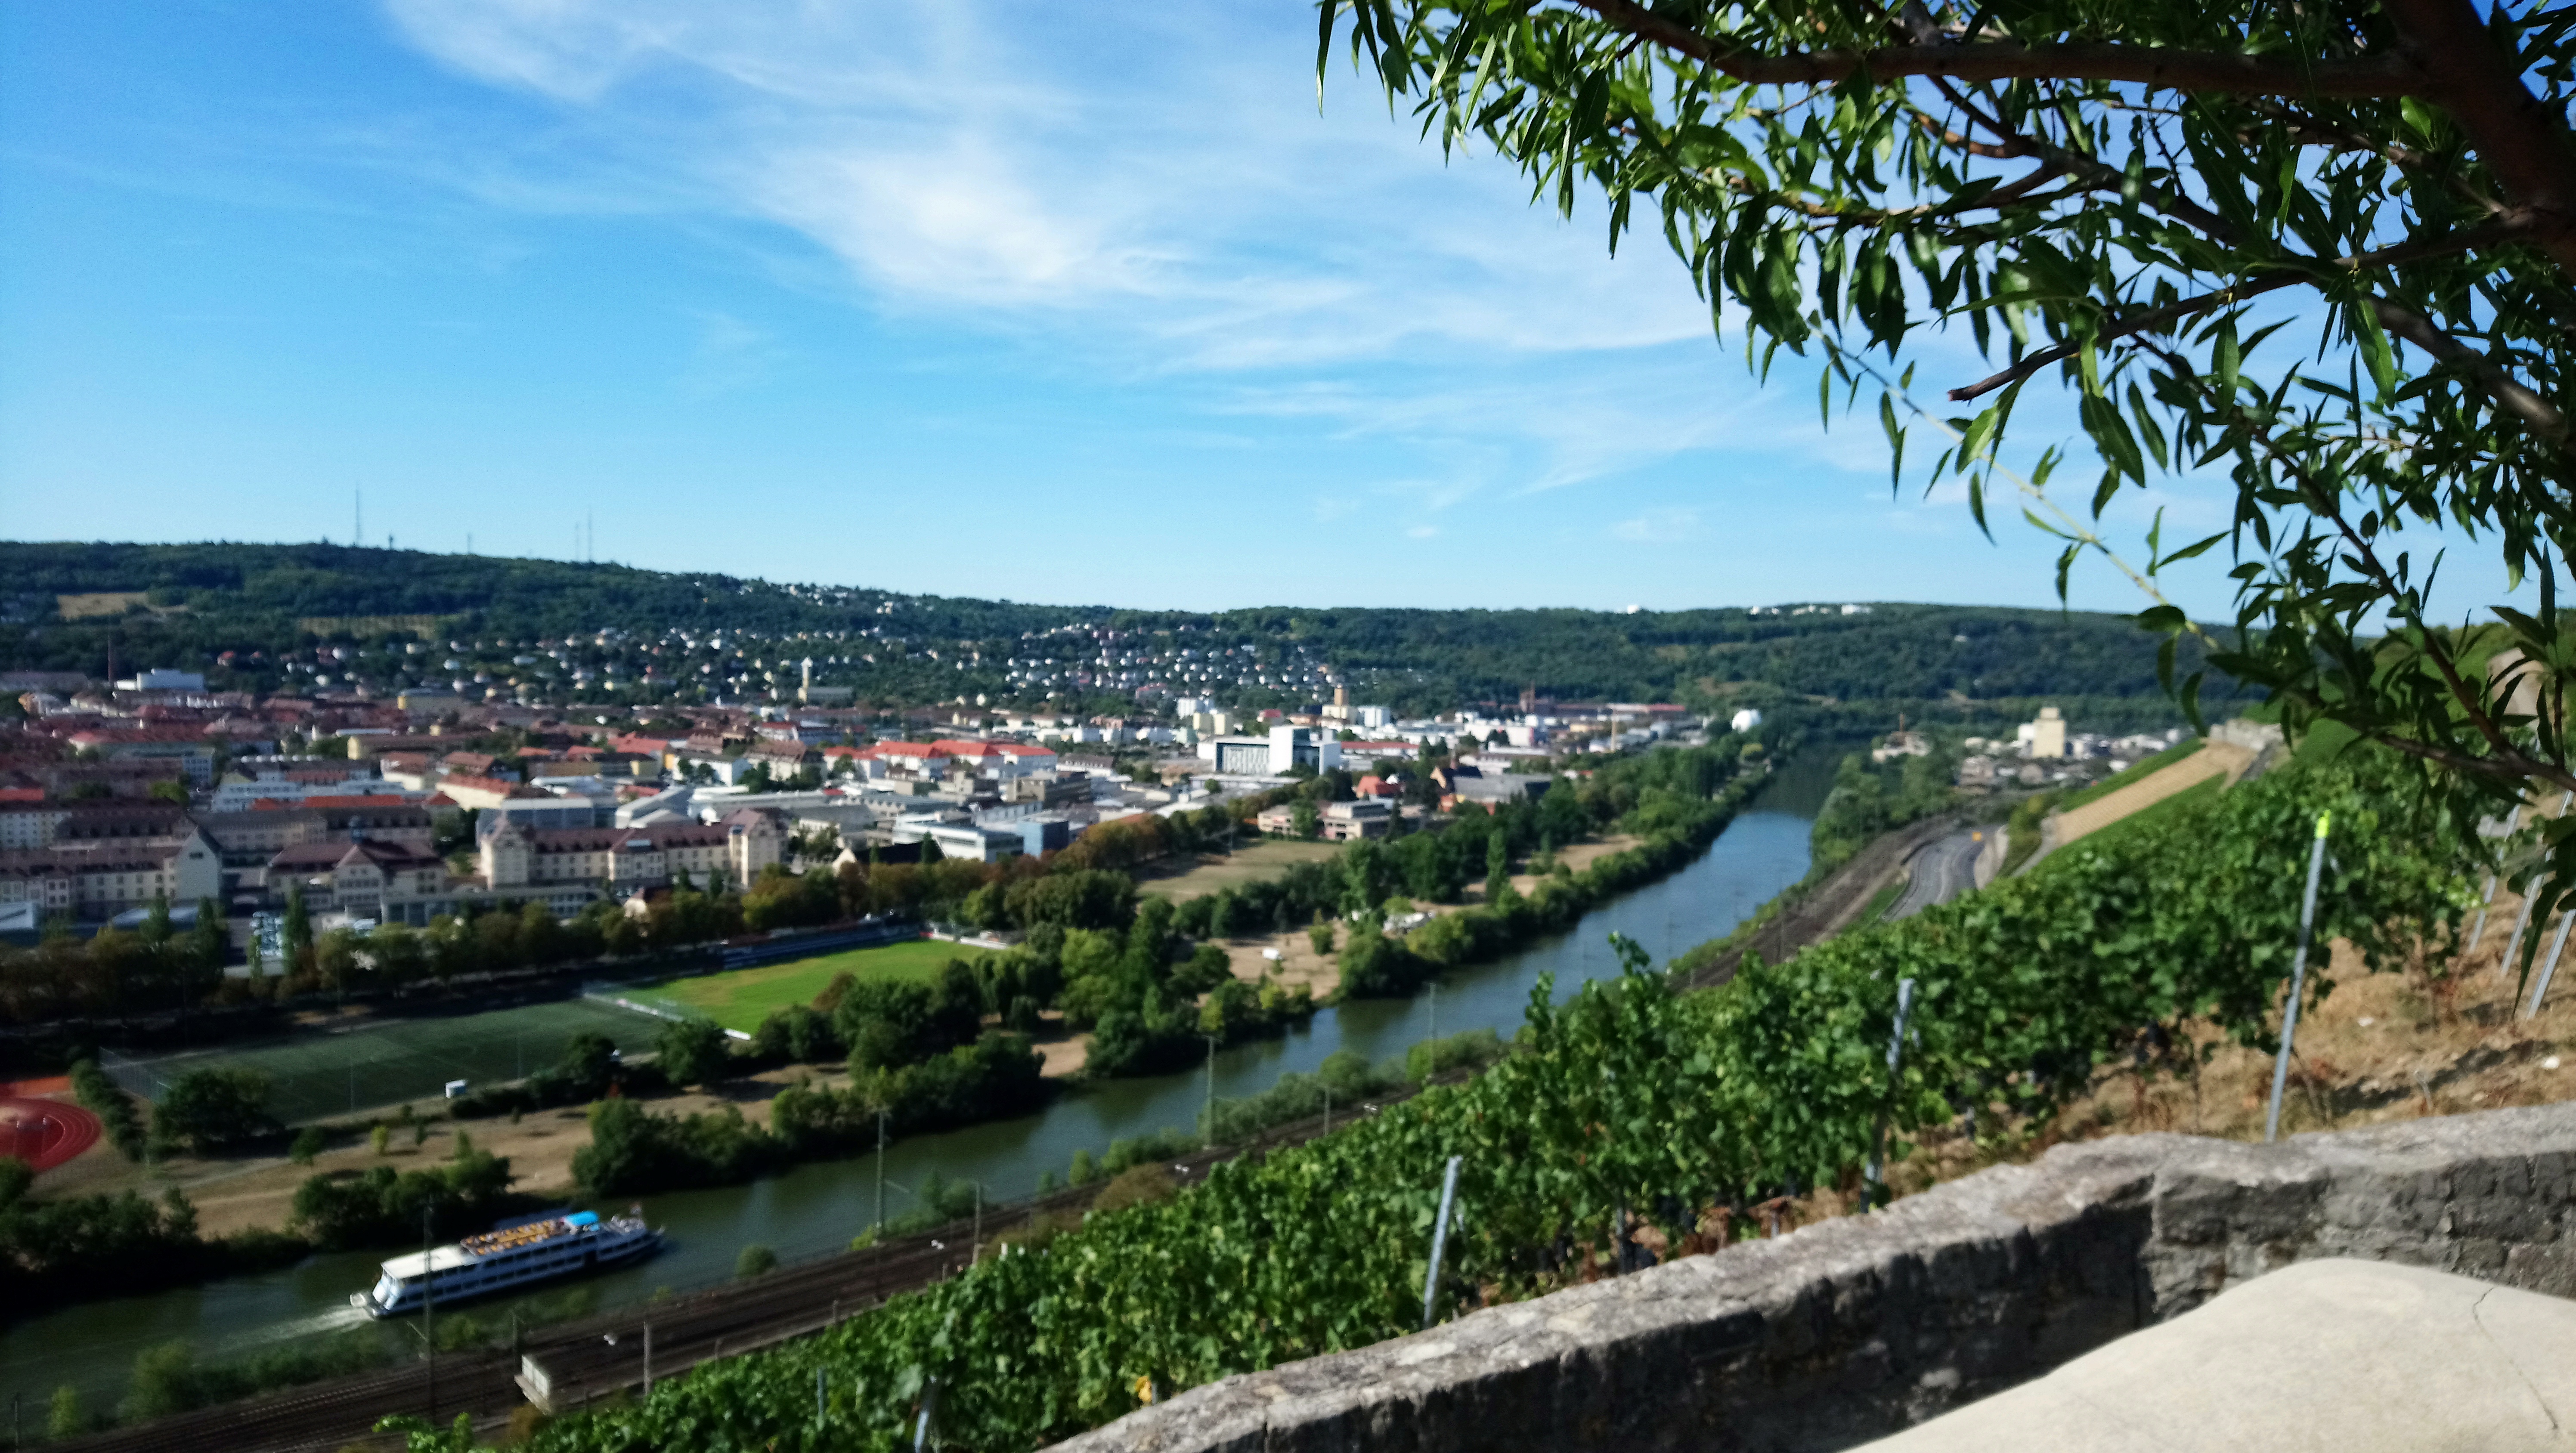 Unser schönes Familien-Wochenende in Würzburg: Von Elvis bis ibis